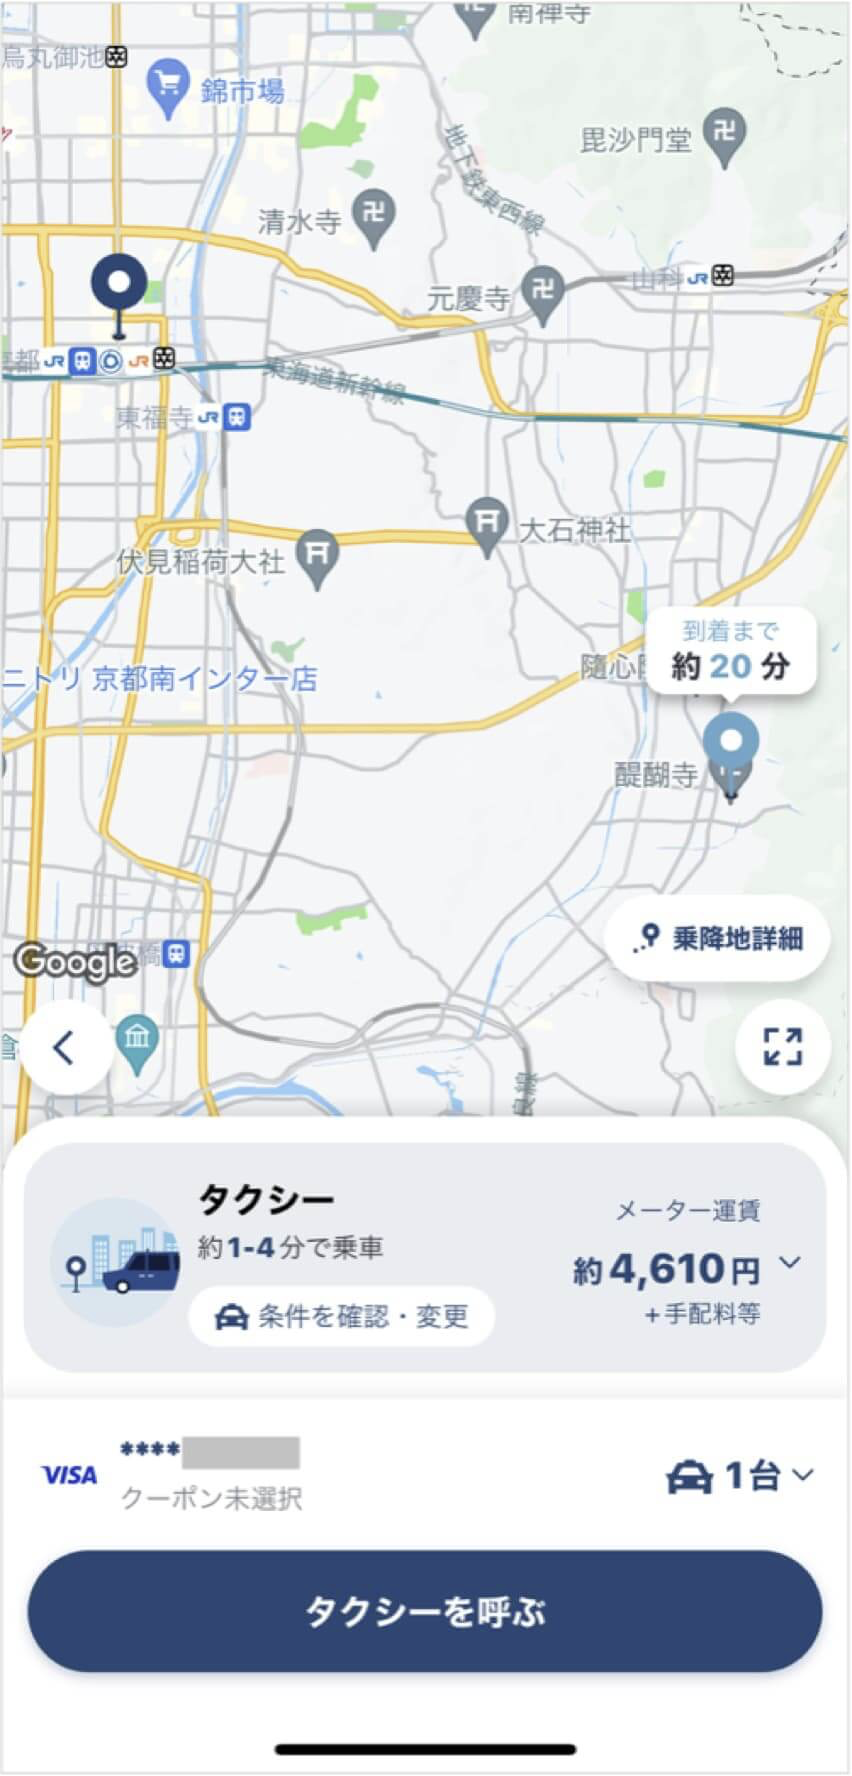 京都駅から醍醐寺までのタクシー料金・所要時間まとめ